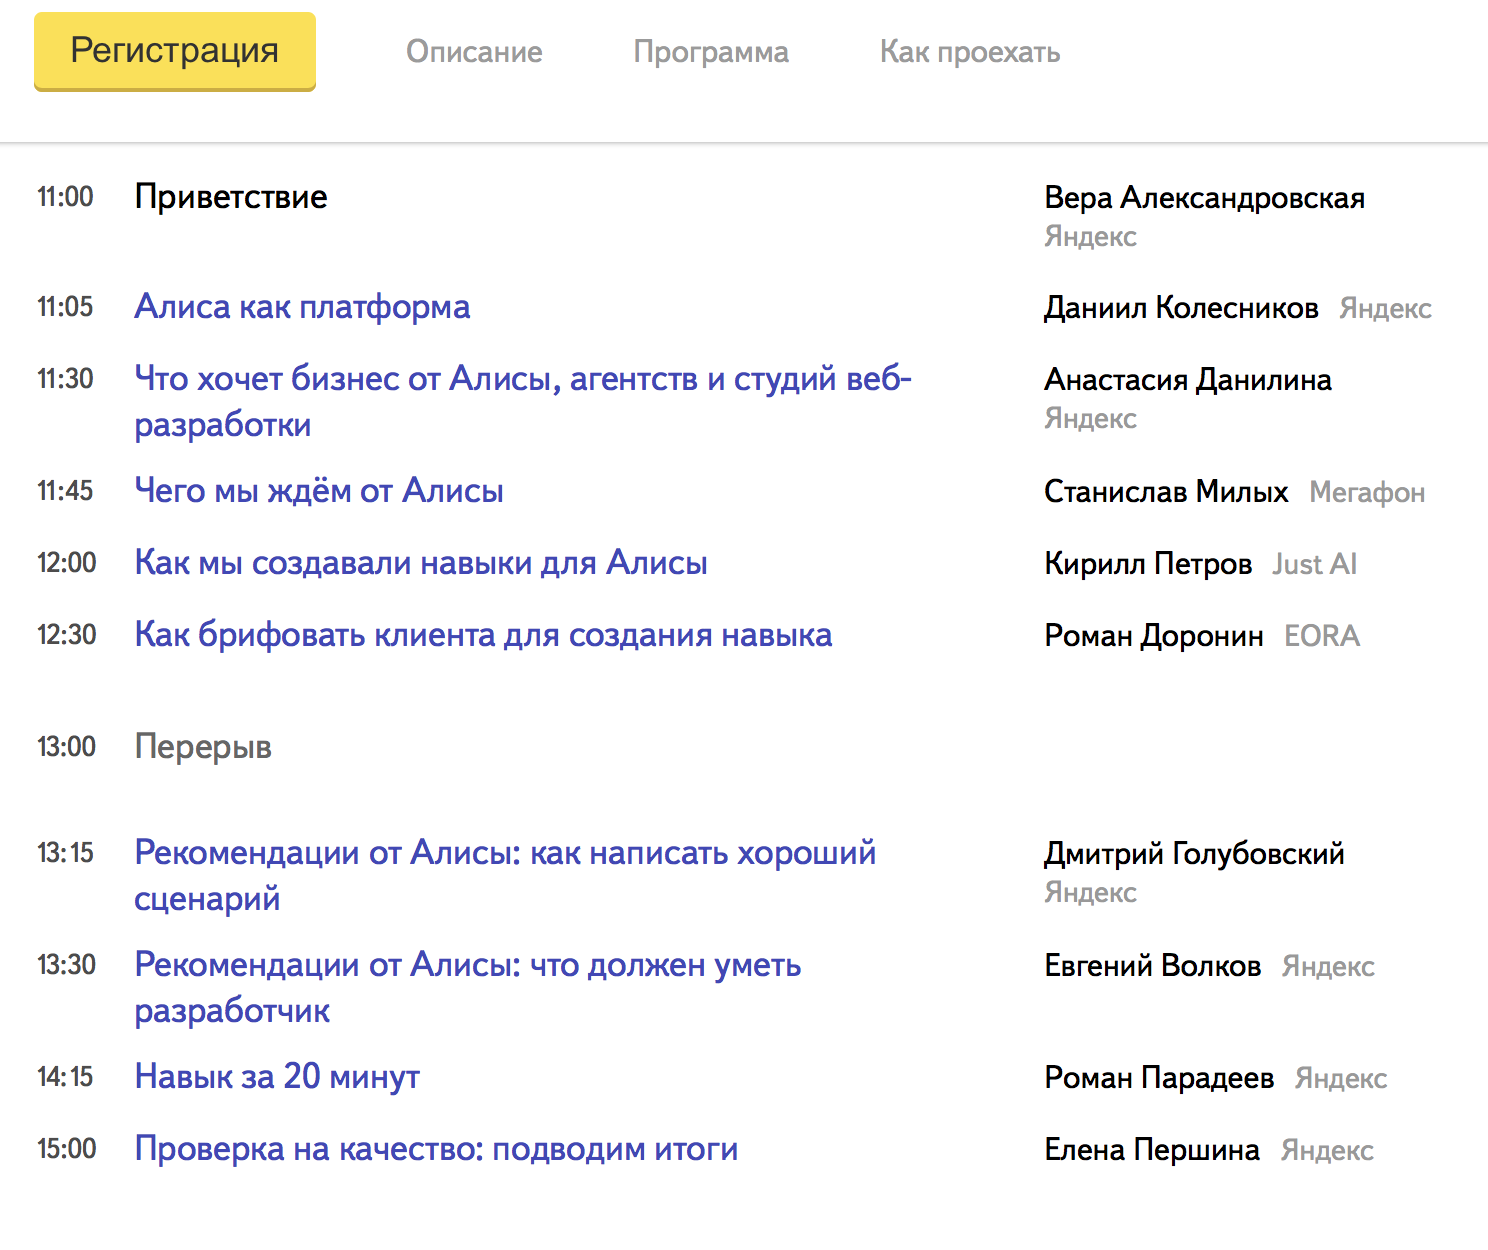 Яндекс приглашает на встречу «В гостях у Алисы» 16 июля